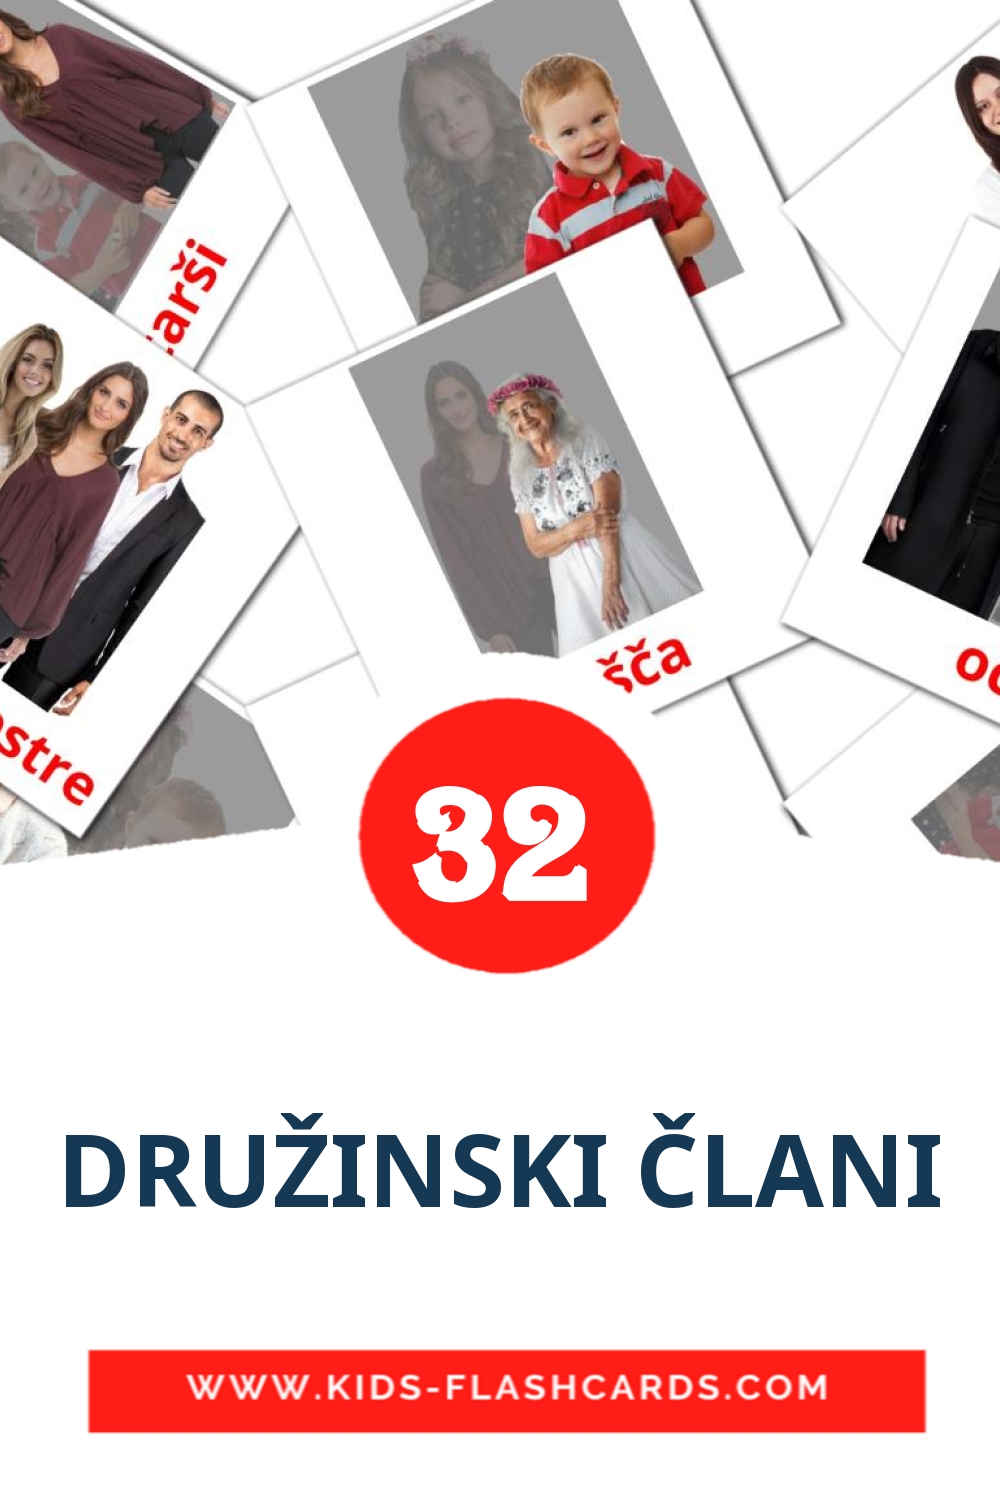 32 DRUŽINSKI ČLANI Picture Cards for Kindergarden in slovenian